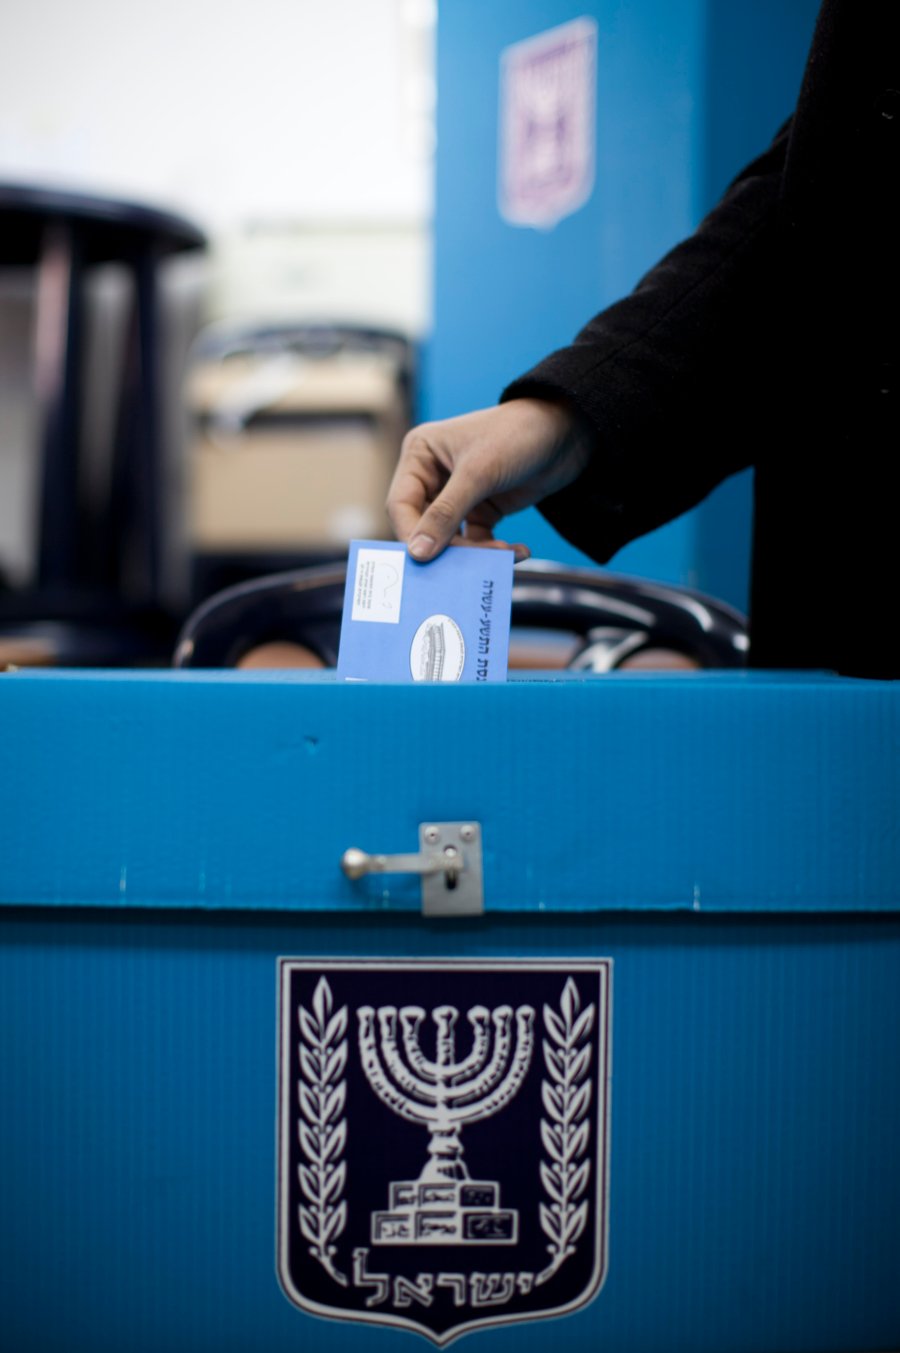 בחירות בישראל • גלריה מתעדכנת